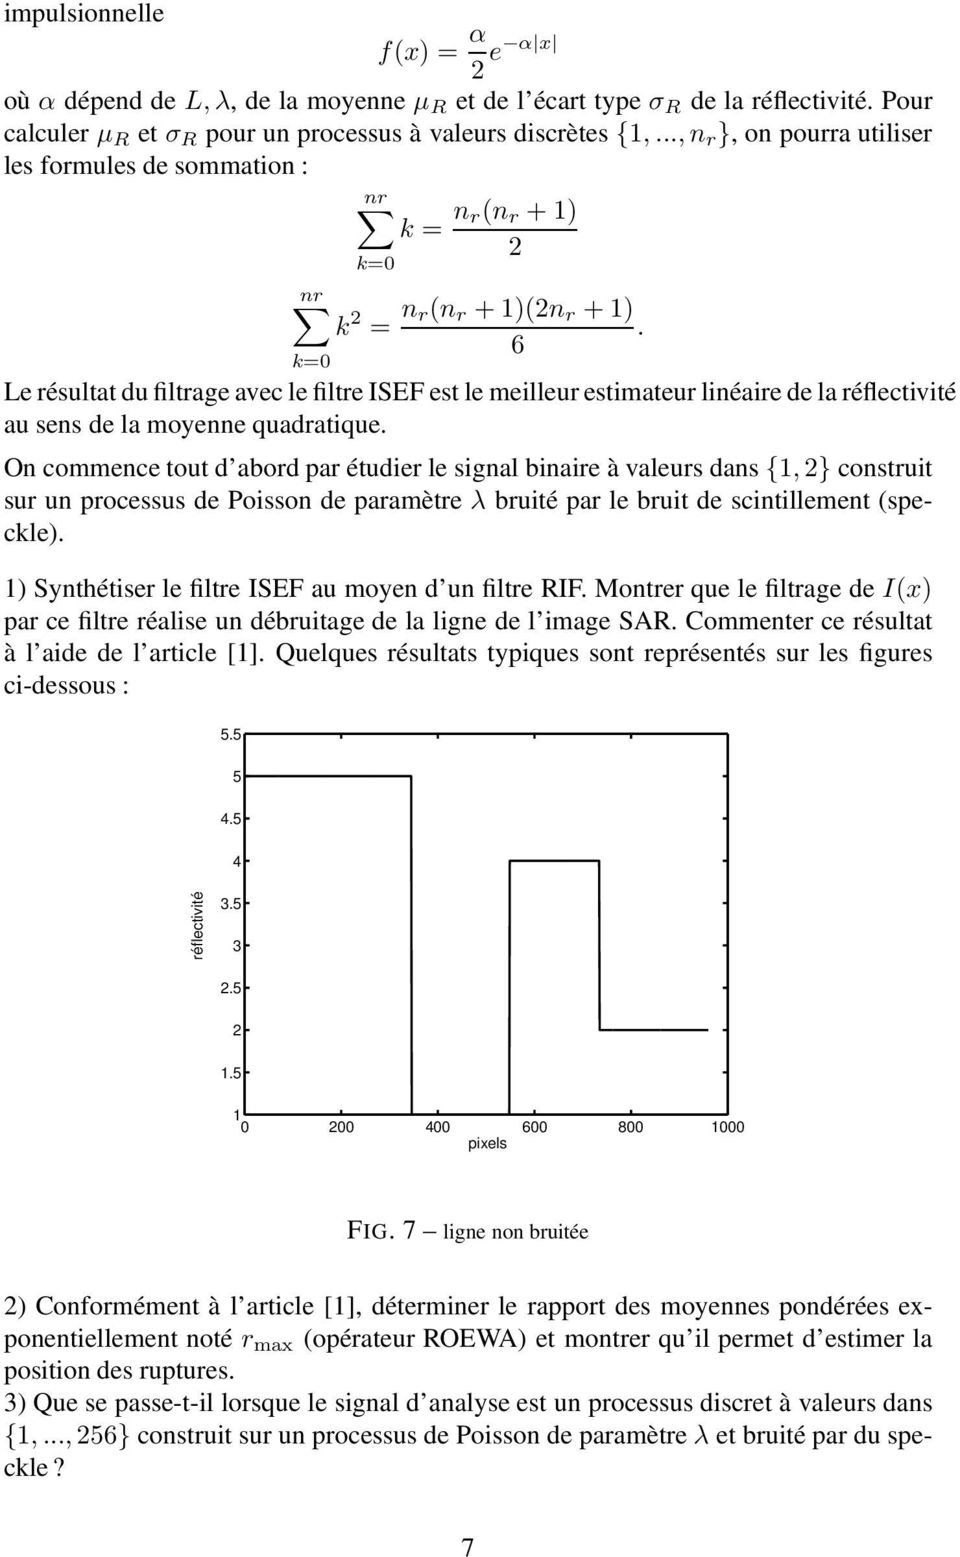 Le résultat du filtrage avec le filtre ISEF est le meilleur estimateur linéaire de la réflectivité au sens de la moyenne quadratique.